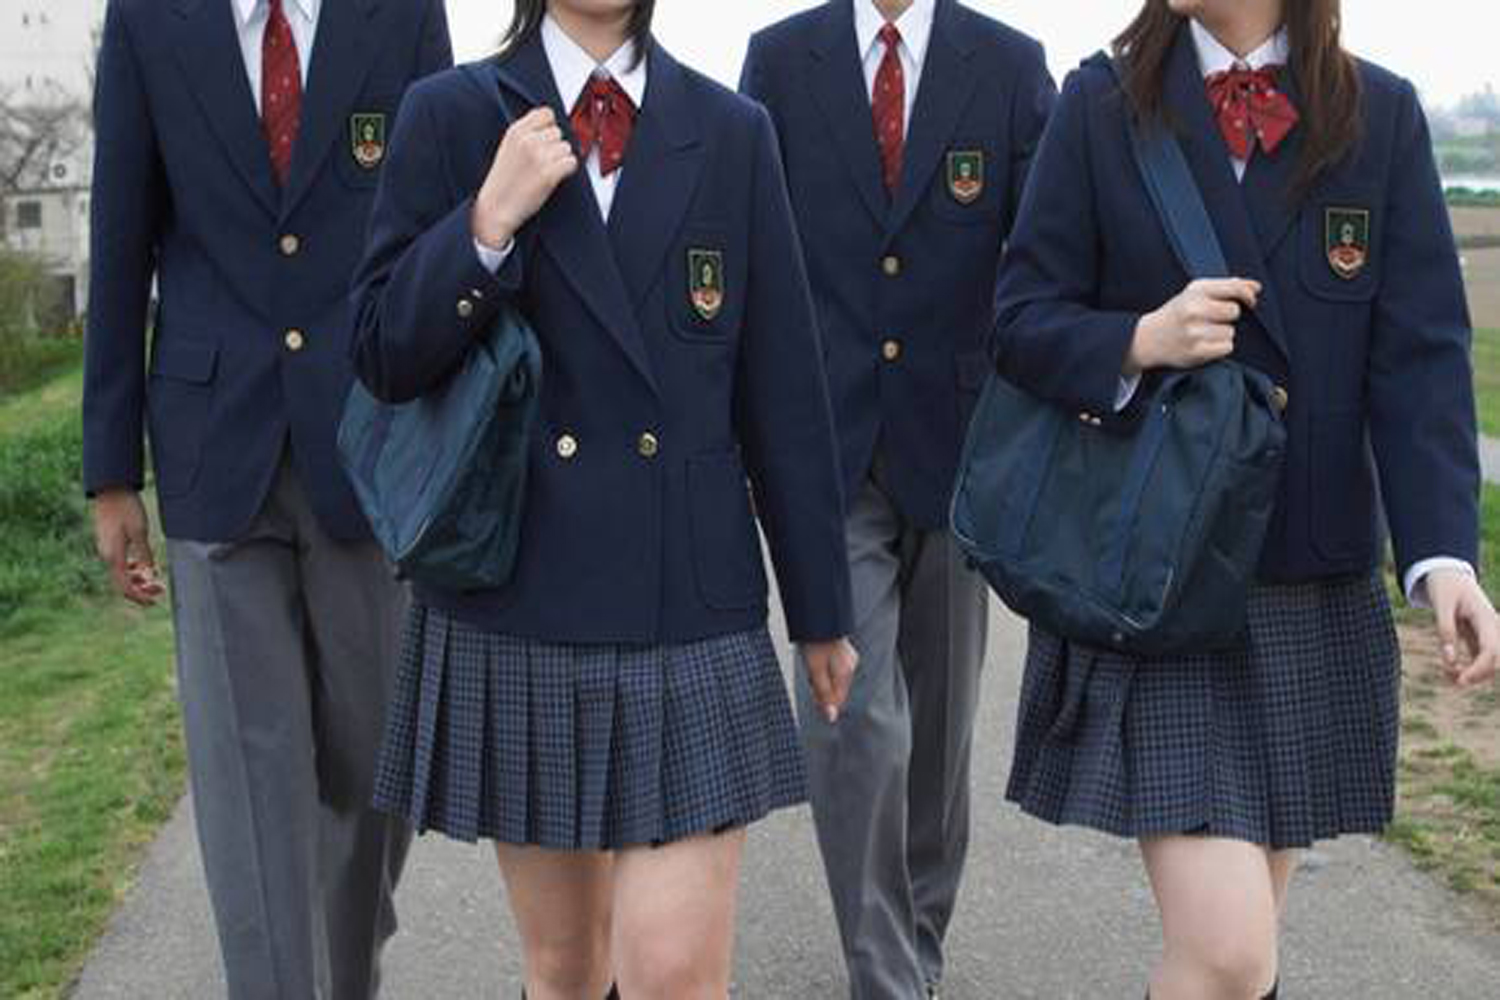 Schoolgirl uniform anal fan pictures